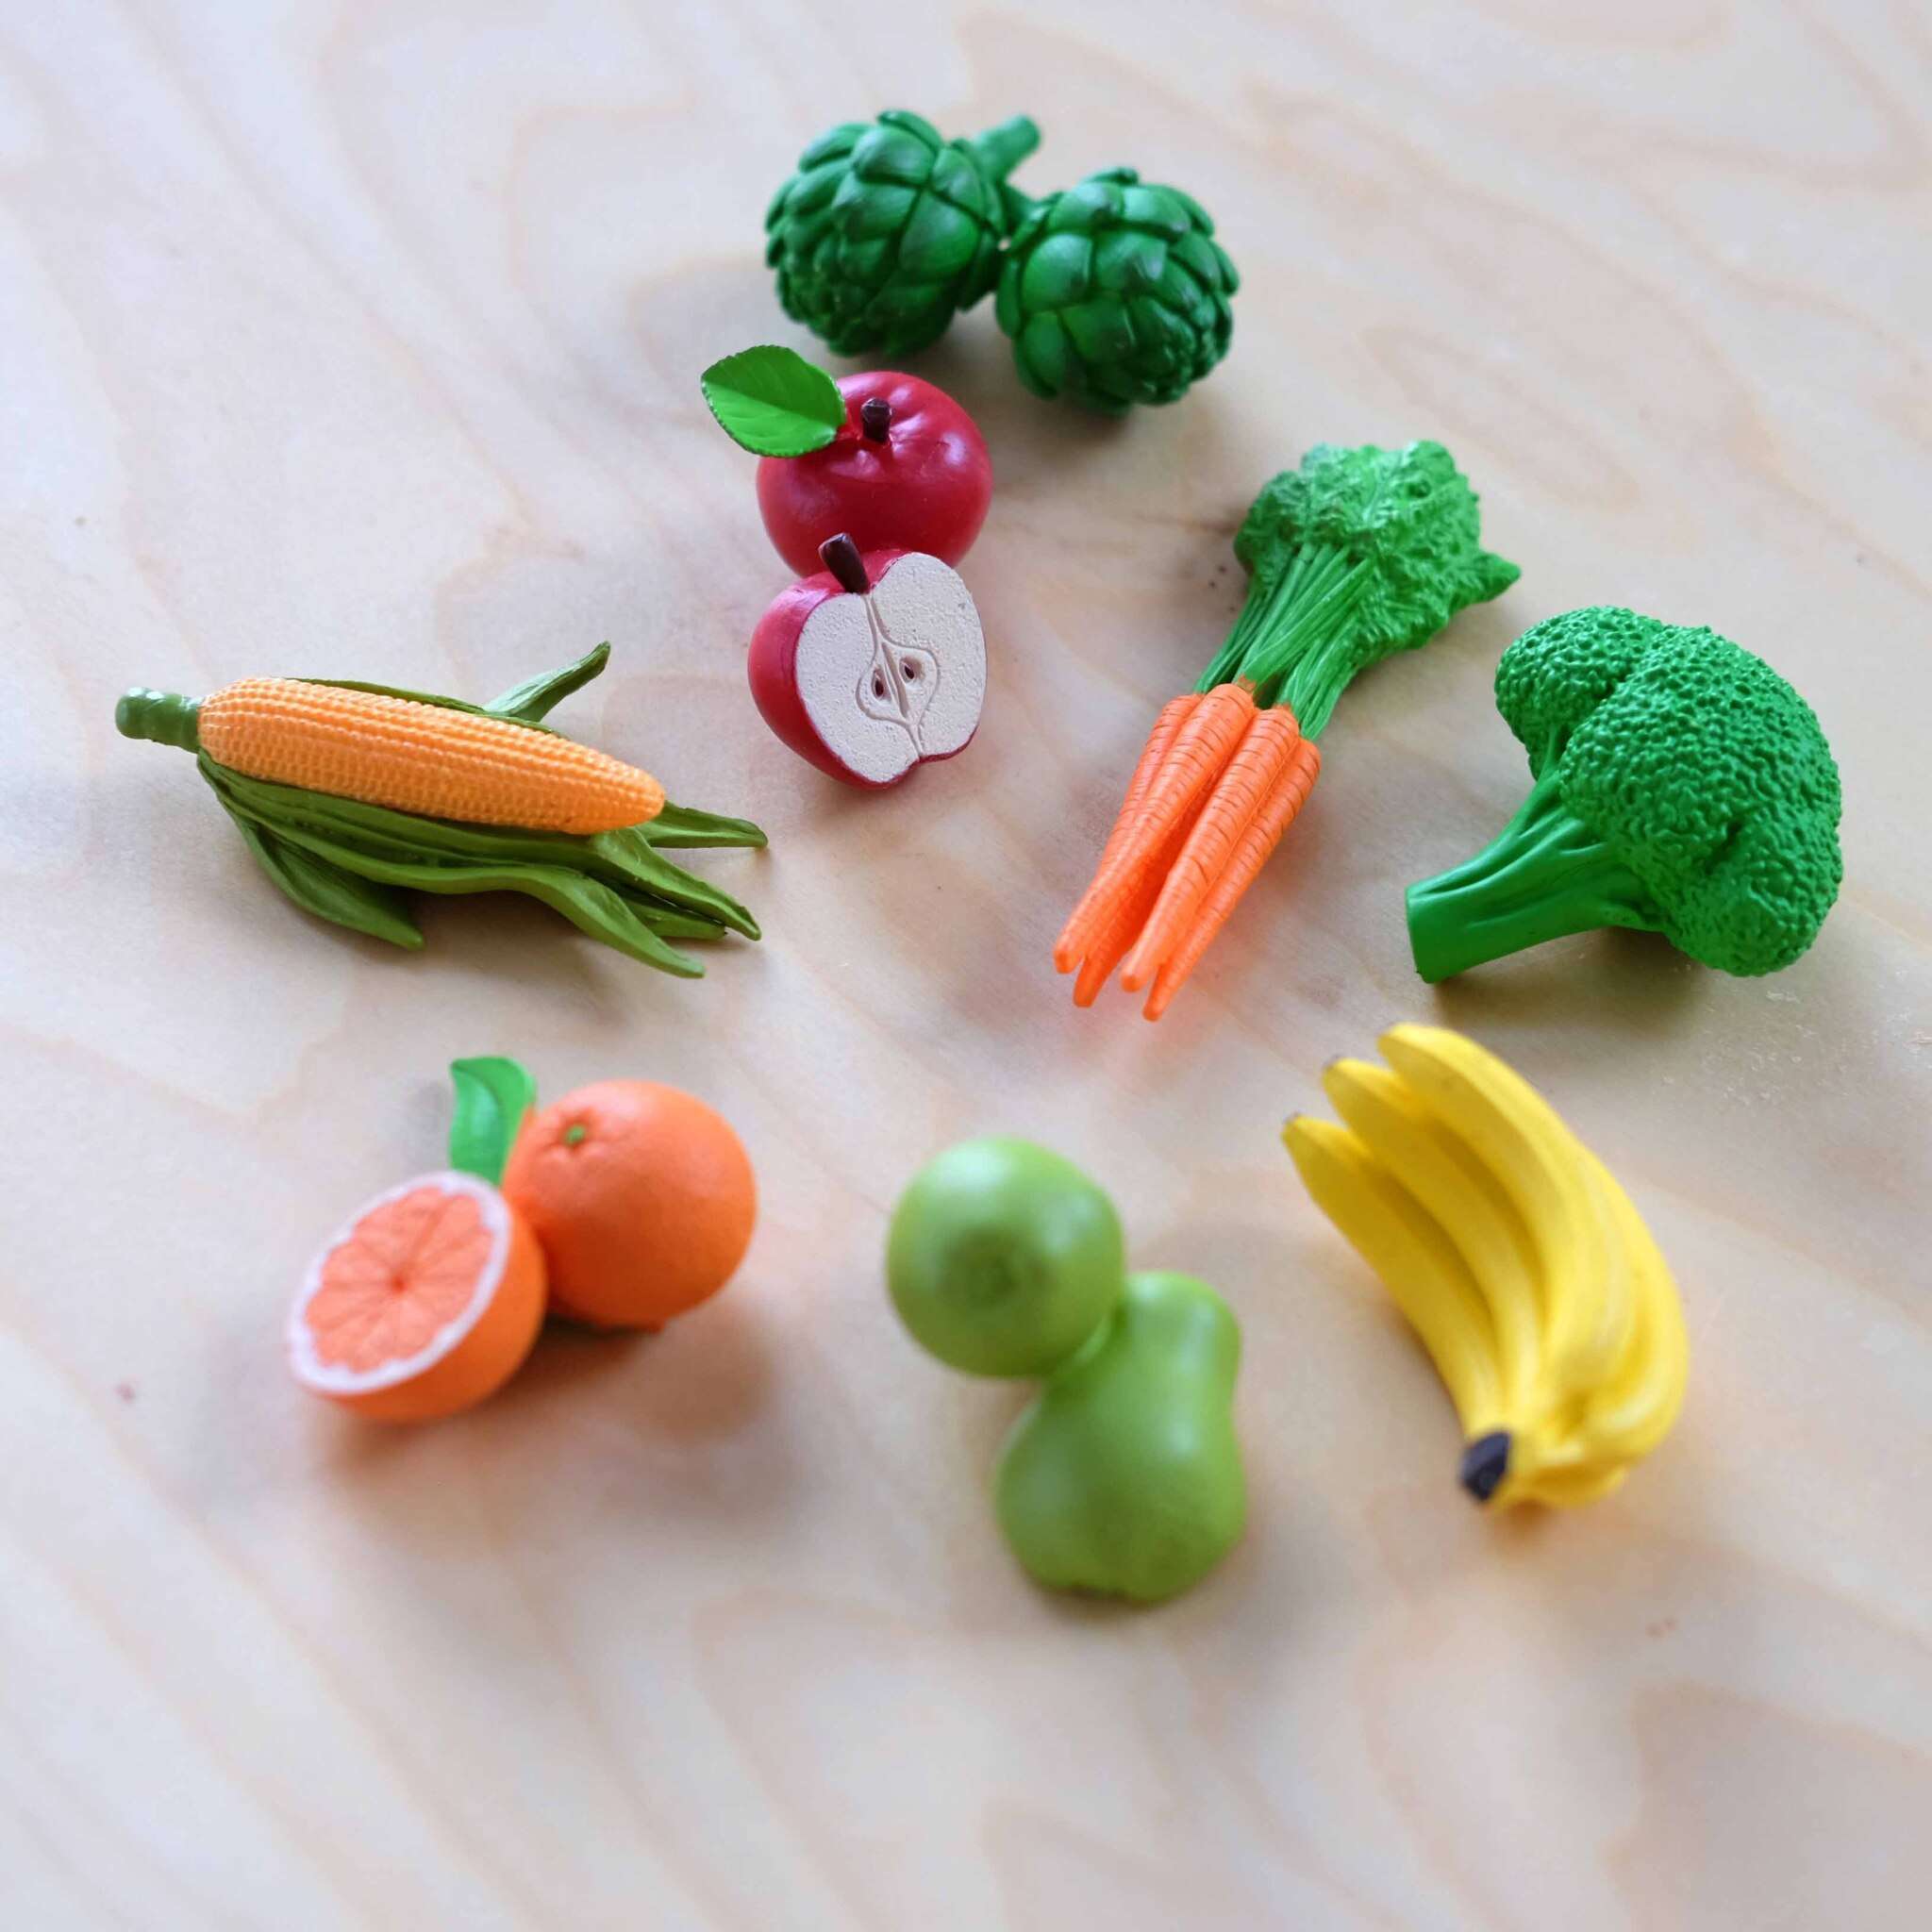 Игрушечные продукты - овощи и фрукты из дерева